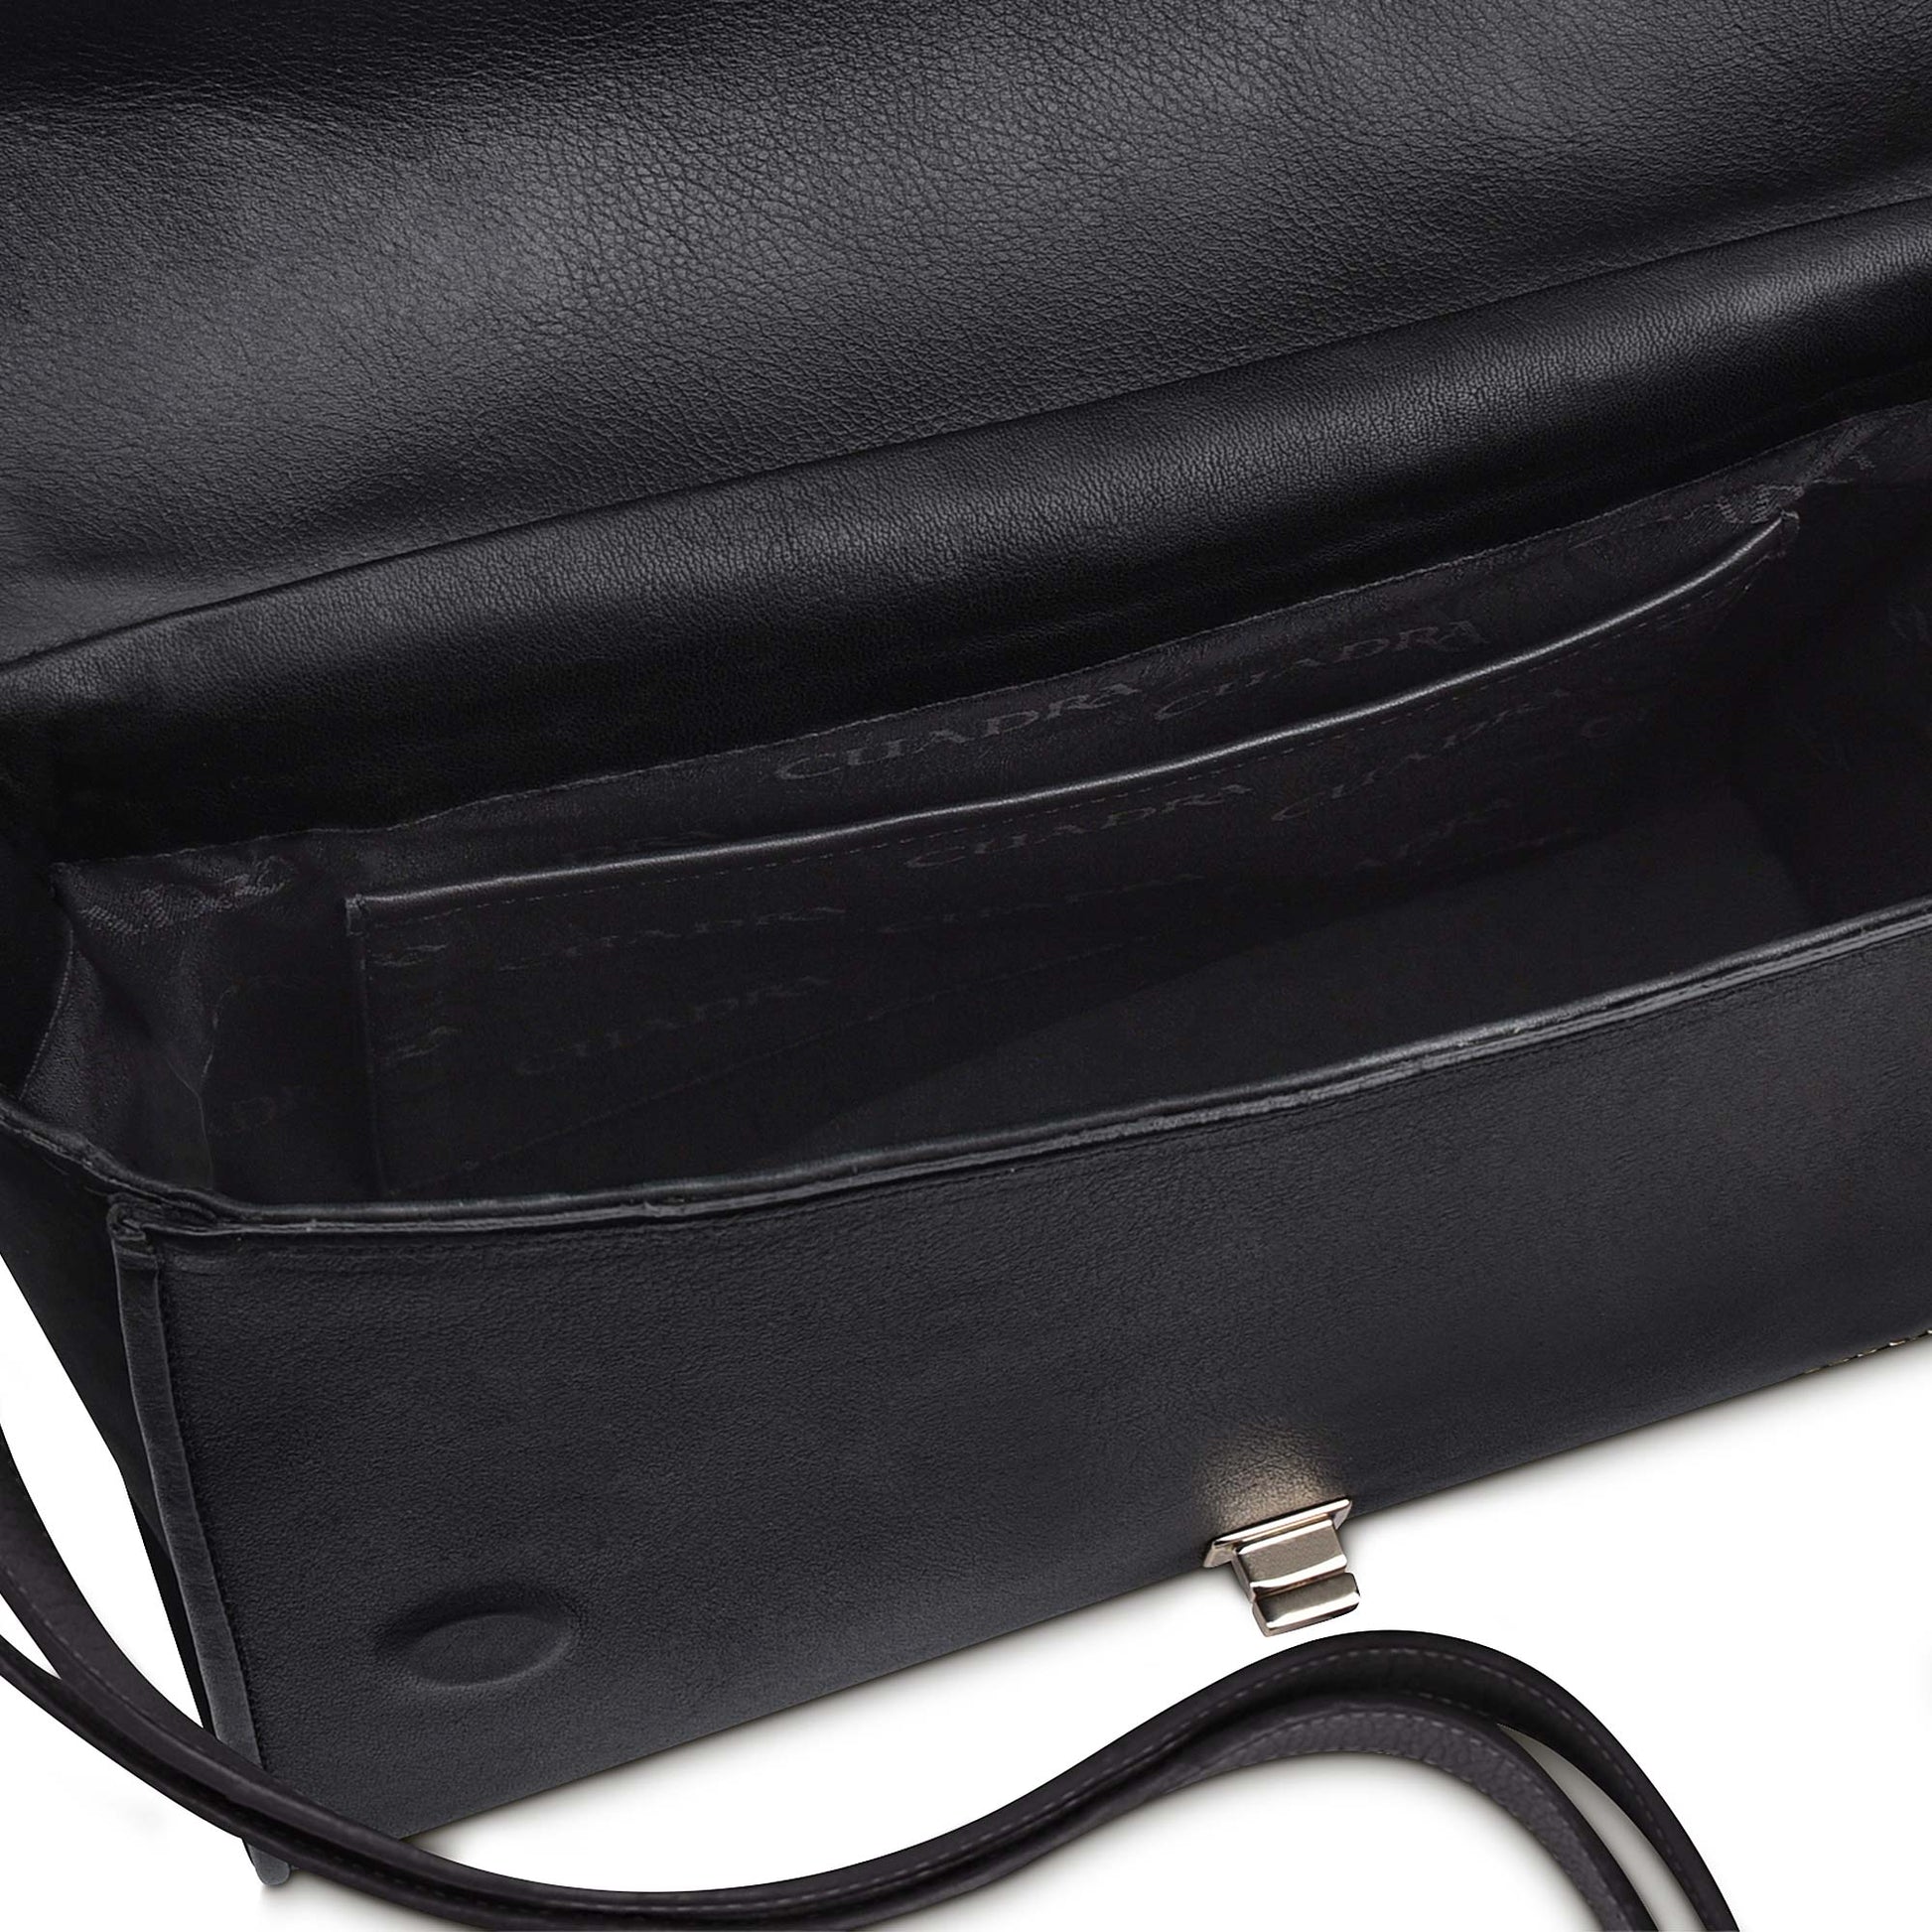 BO376MA - Cuadra black fashion stingray leather ladies purse handbag for women-Kuet.us